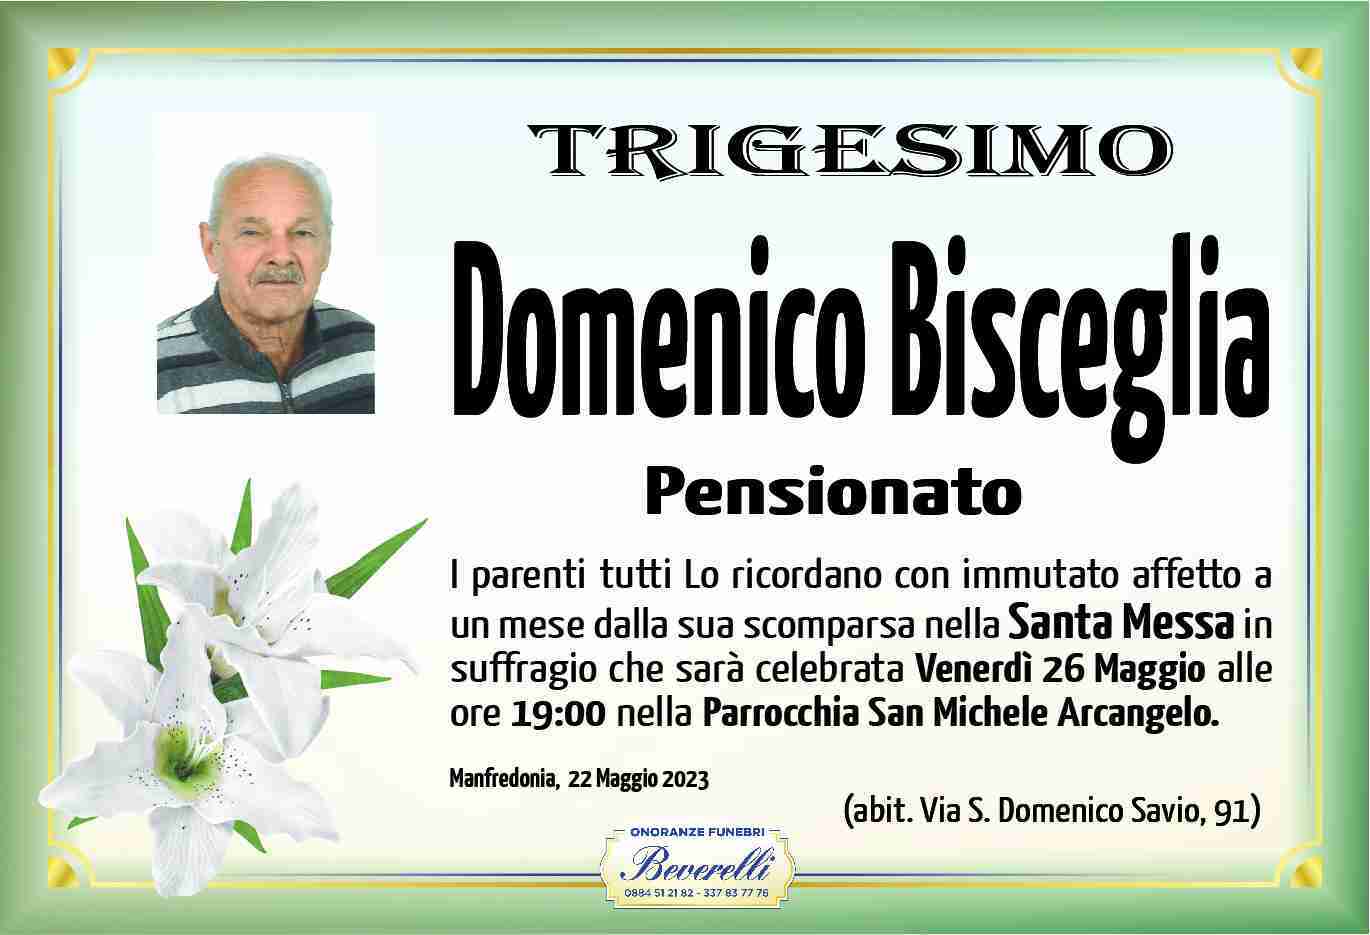 Domenico Bisceglia